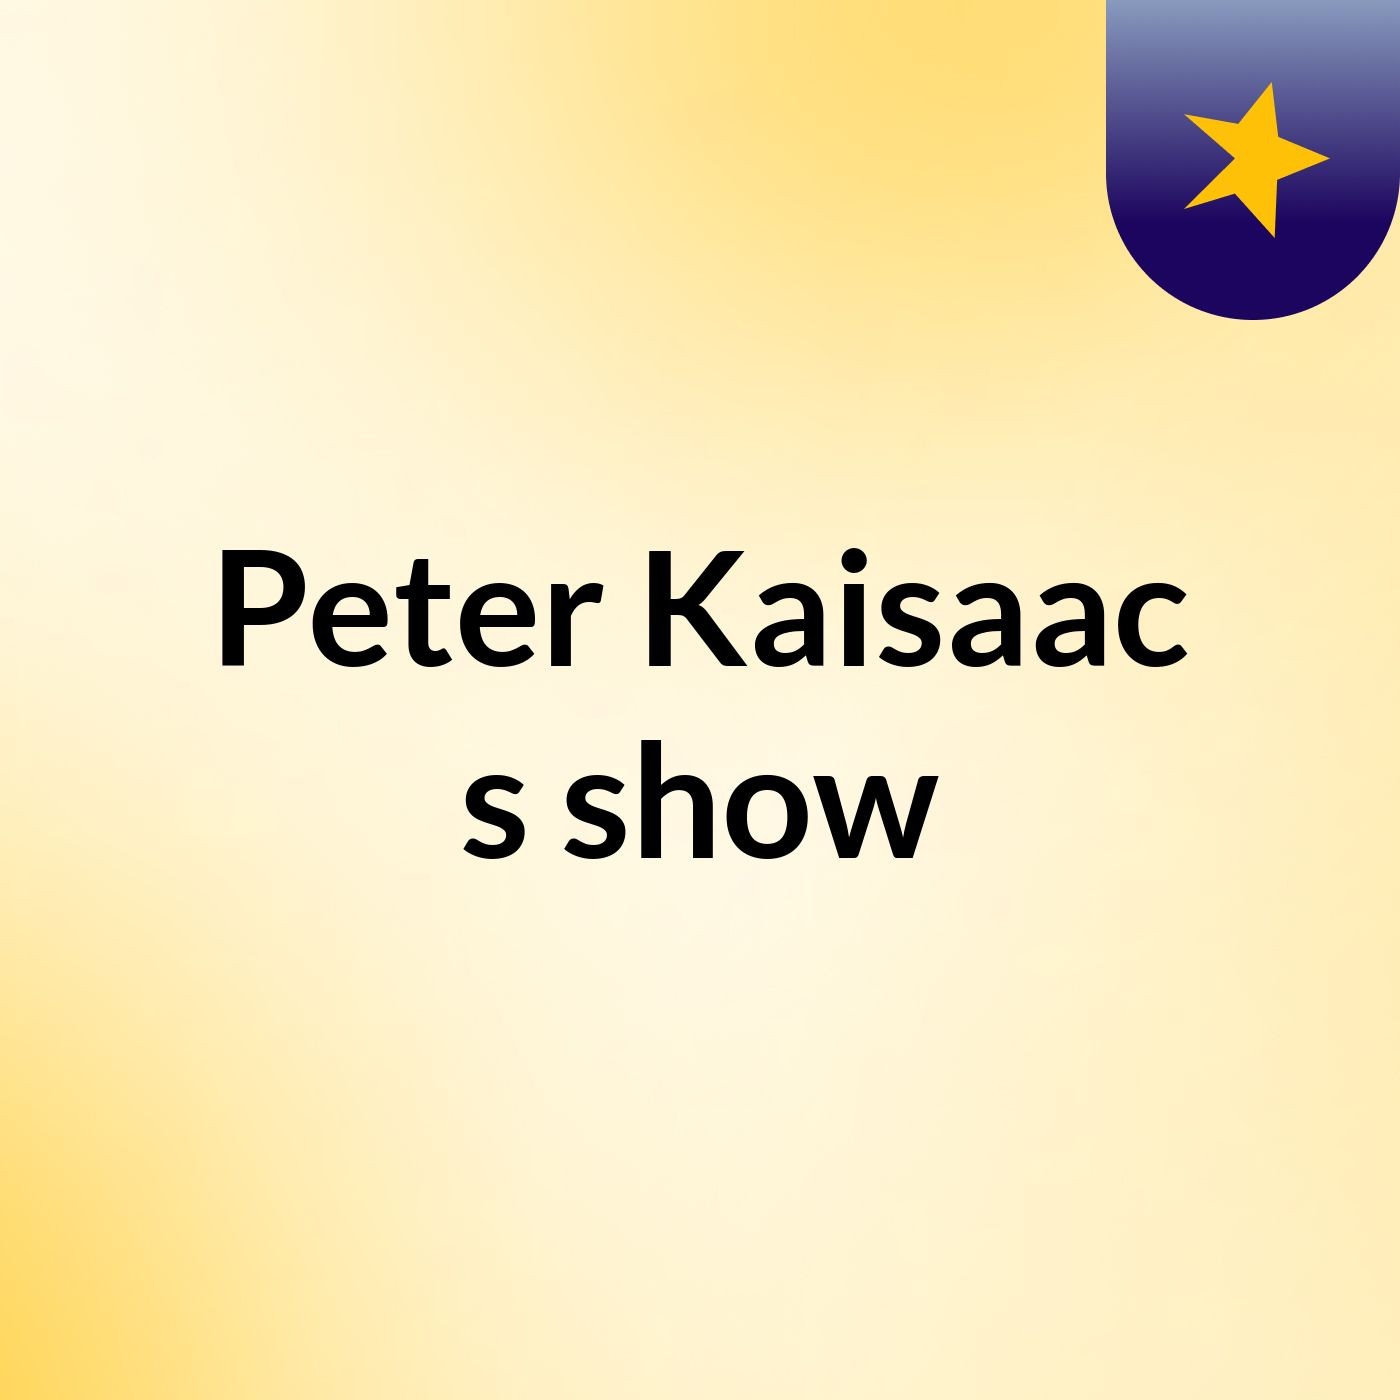 Peter Kaisaac's show